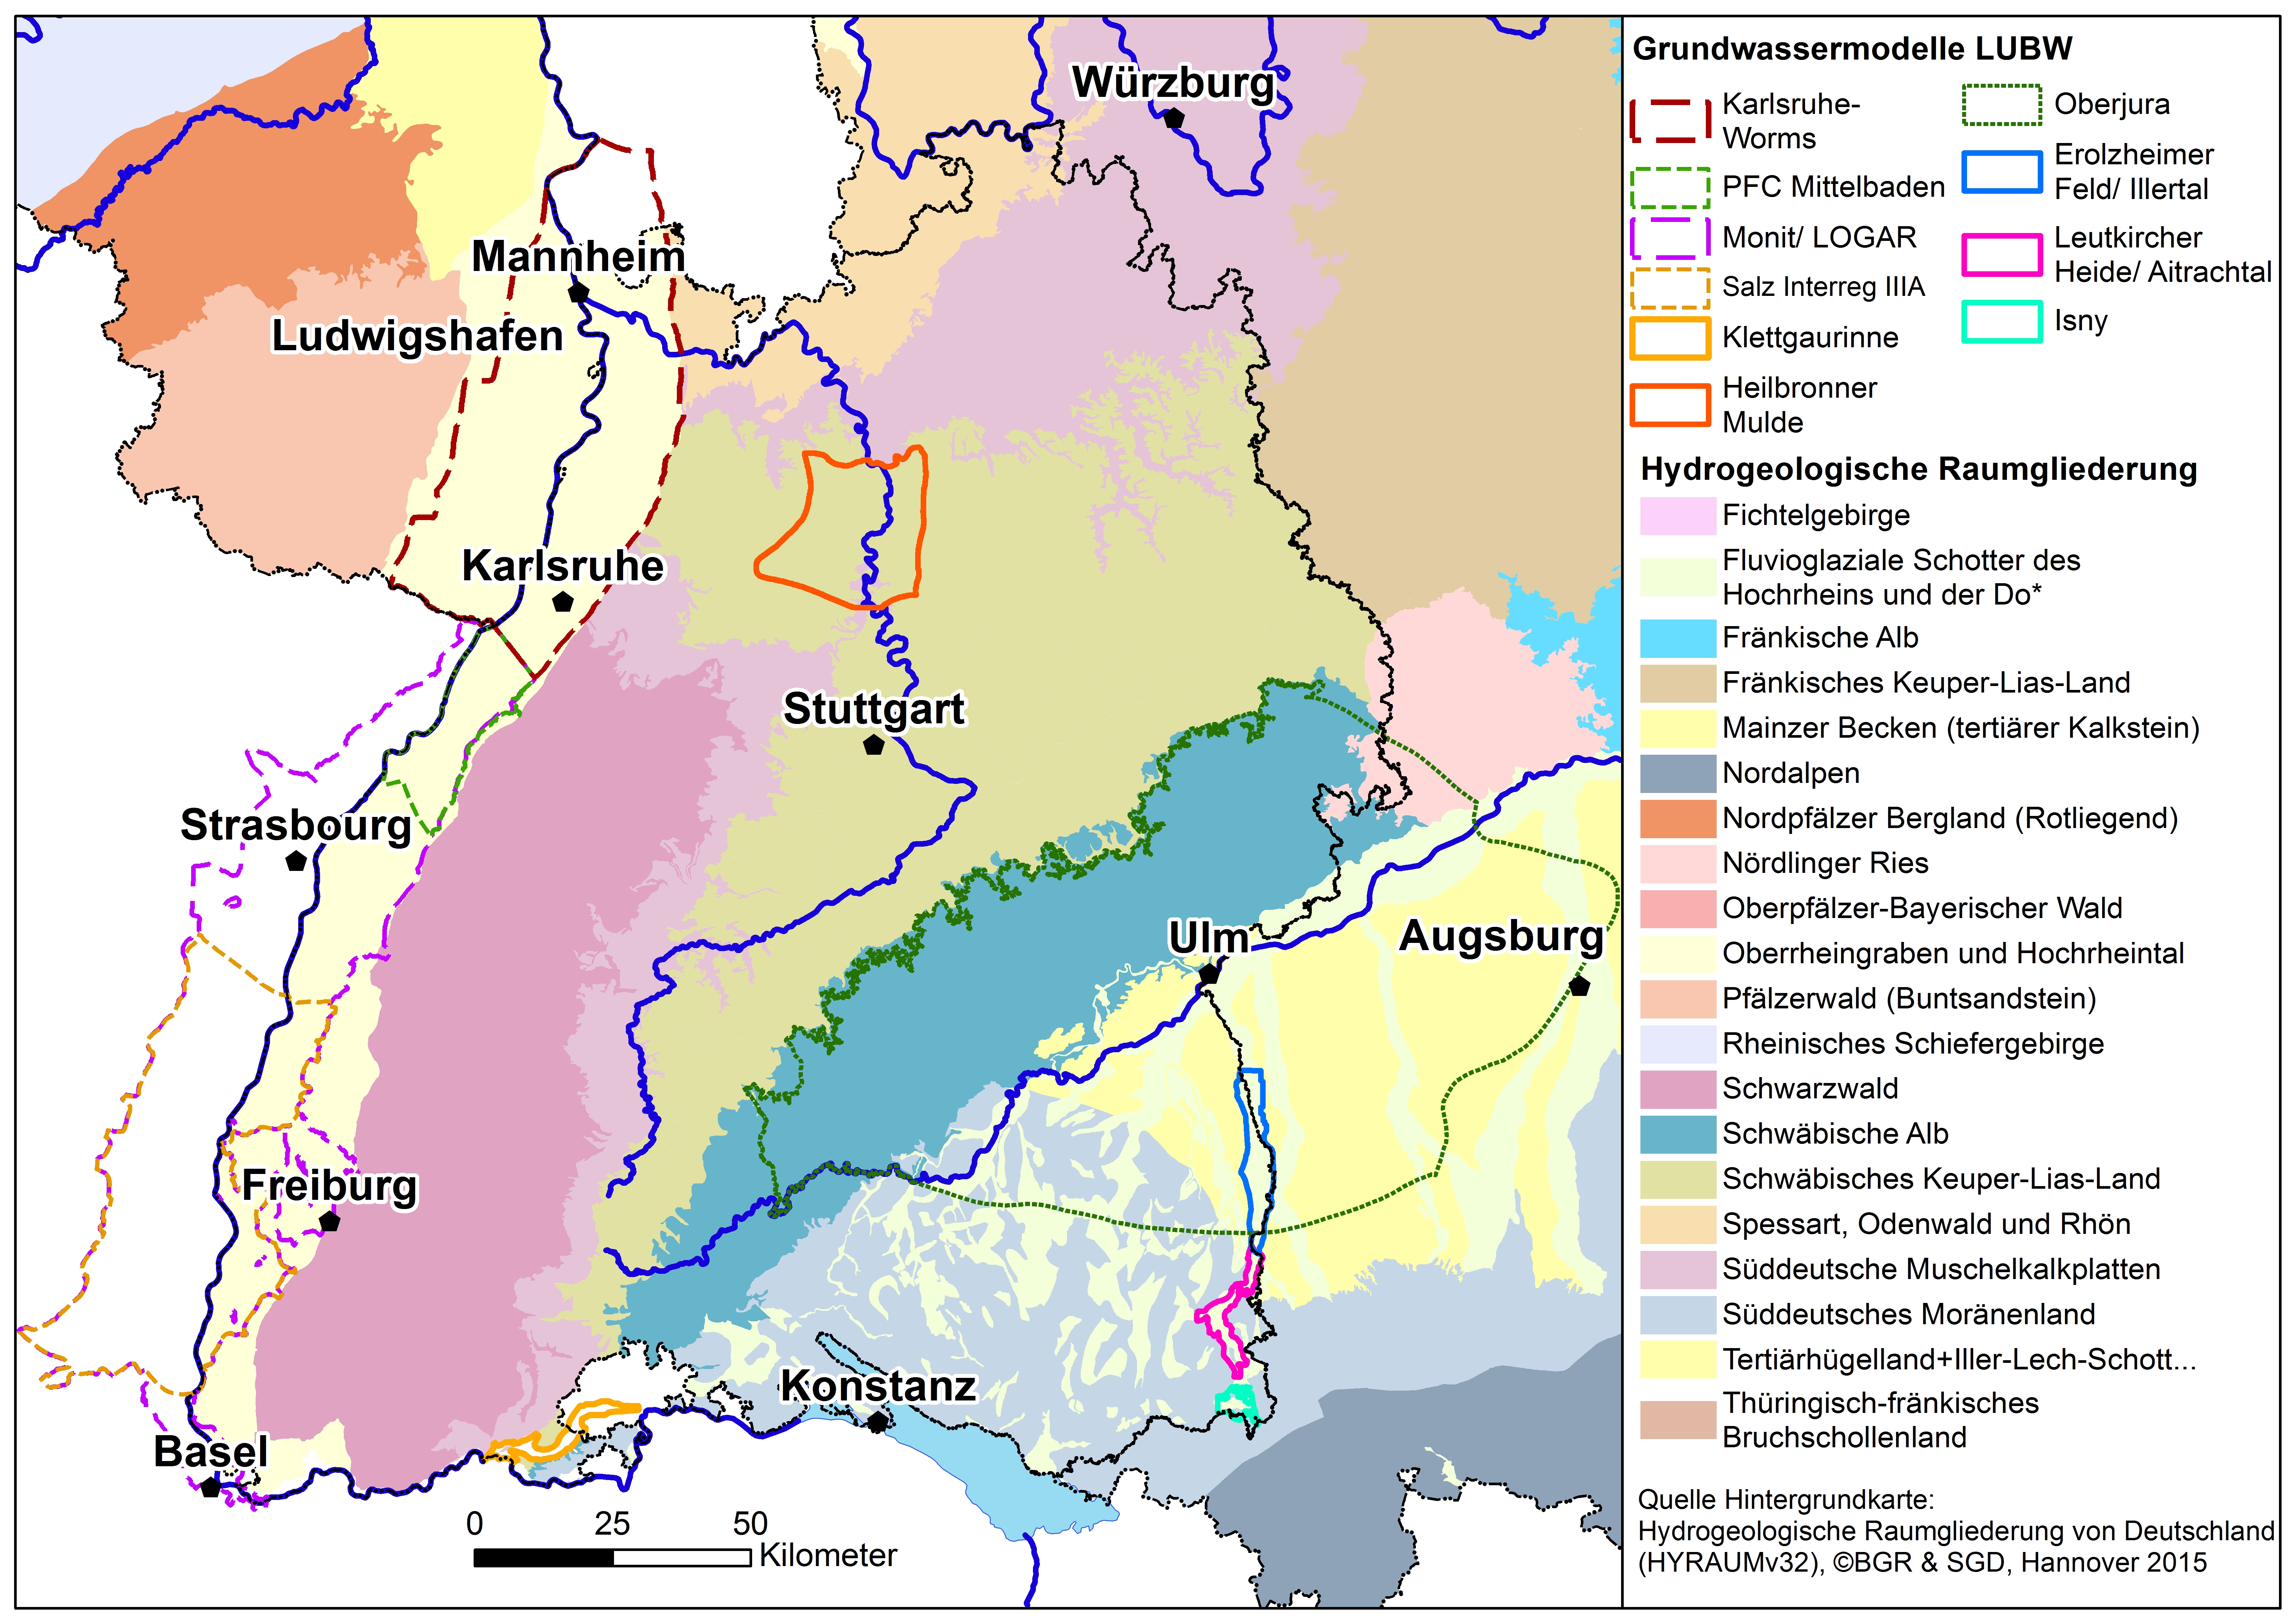 Übersichtskarte der großräumigen Grundwassermodellierungen der LUBW